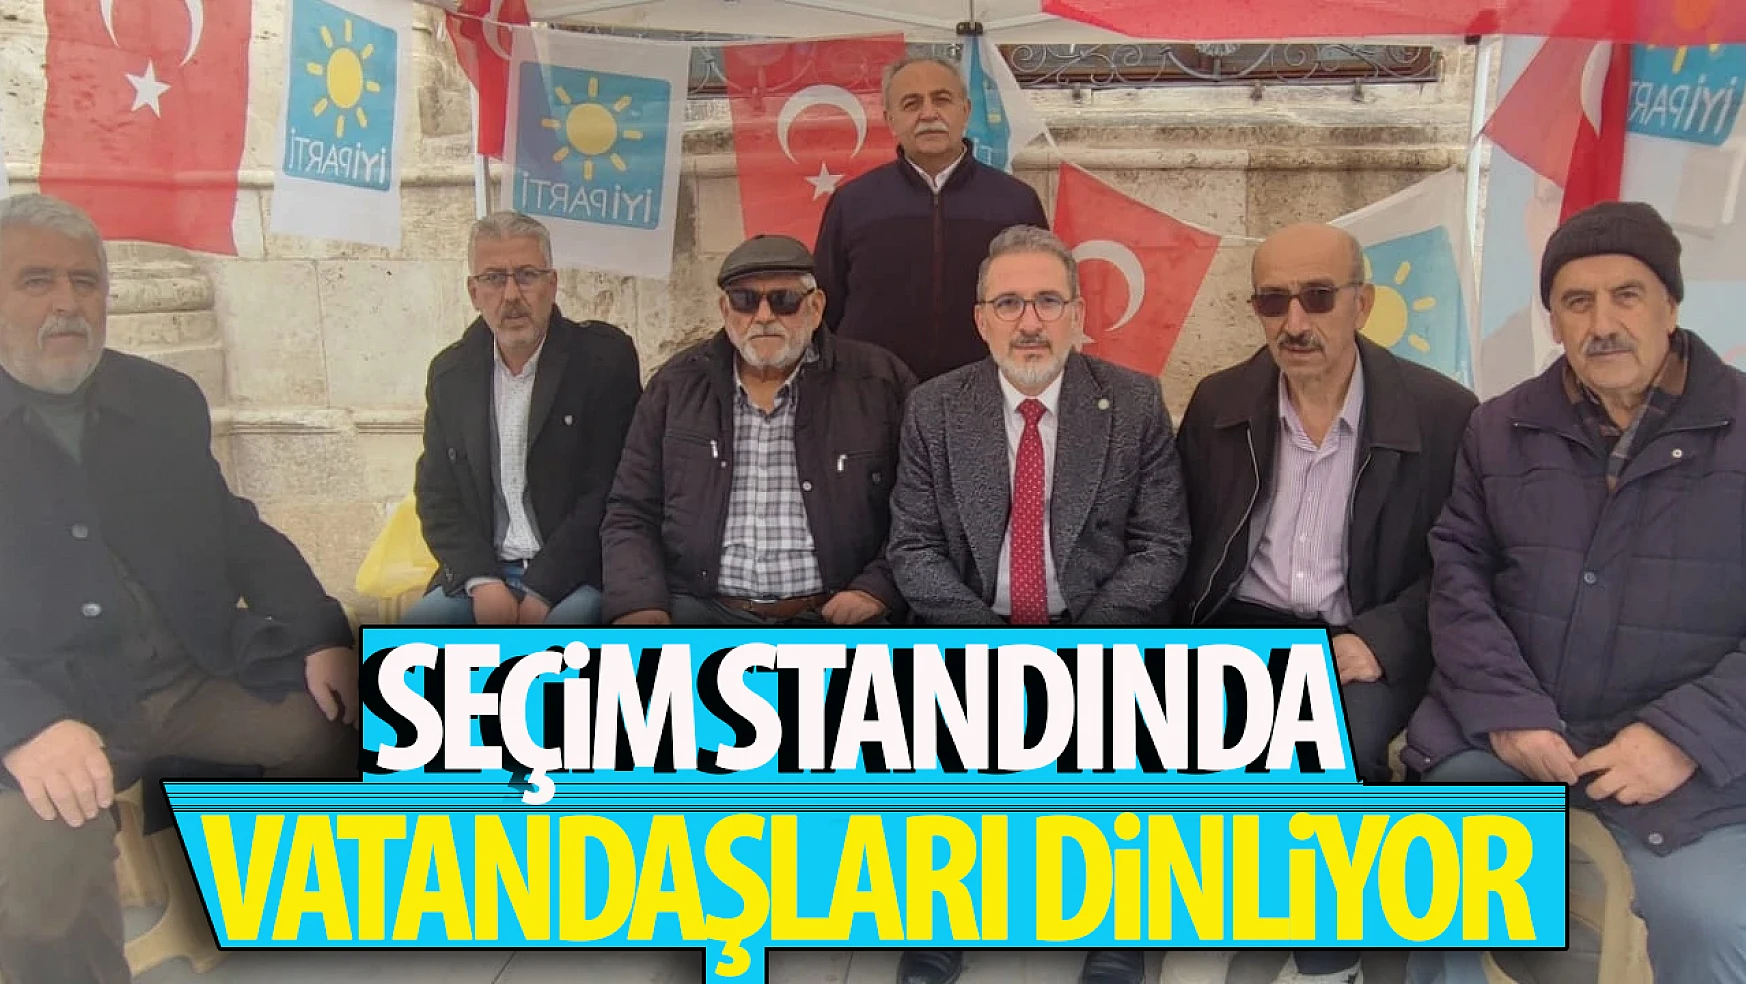 İYİ Parti Karatay seçim standında sorunları dinliyor